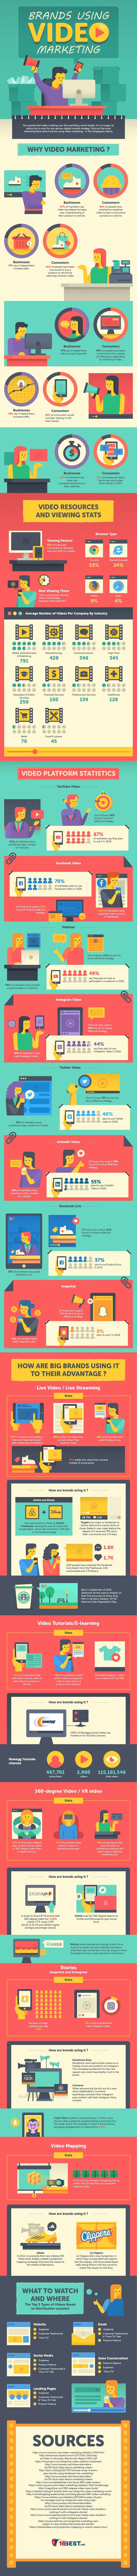 Infographie : L'utilisation du marketing vidéo par les marques 